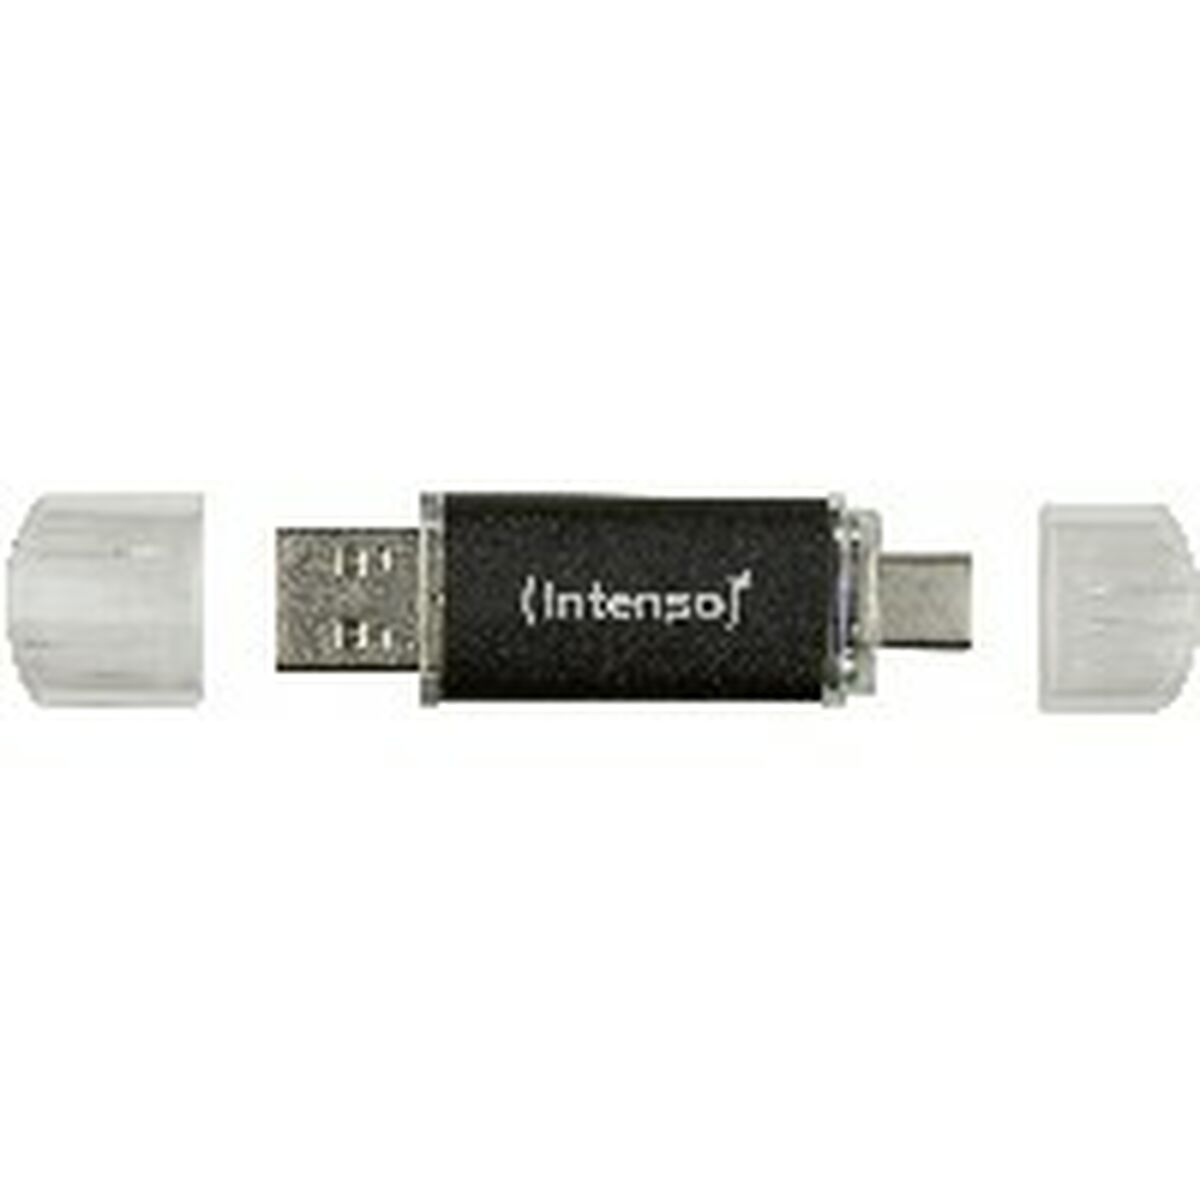 Memoria USB INTENSO Antracita 64 GB